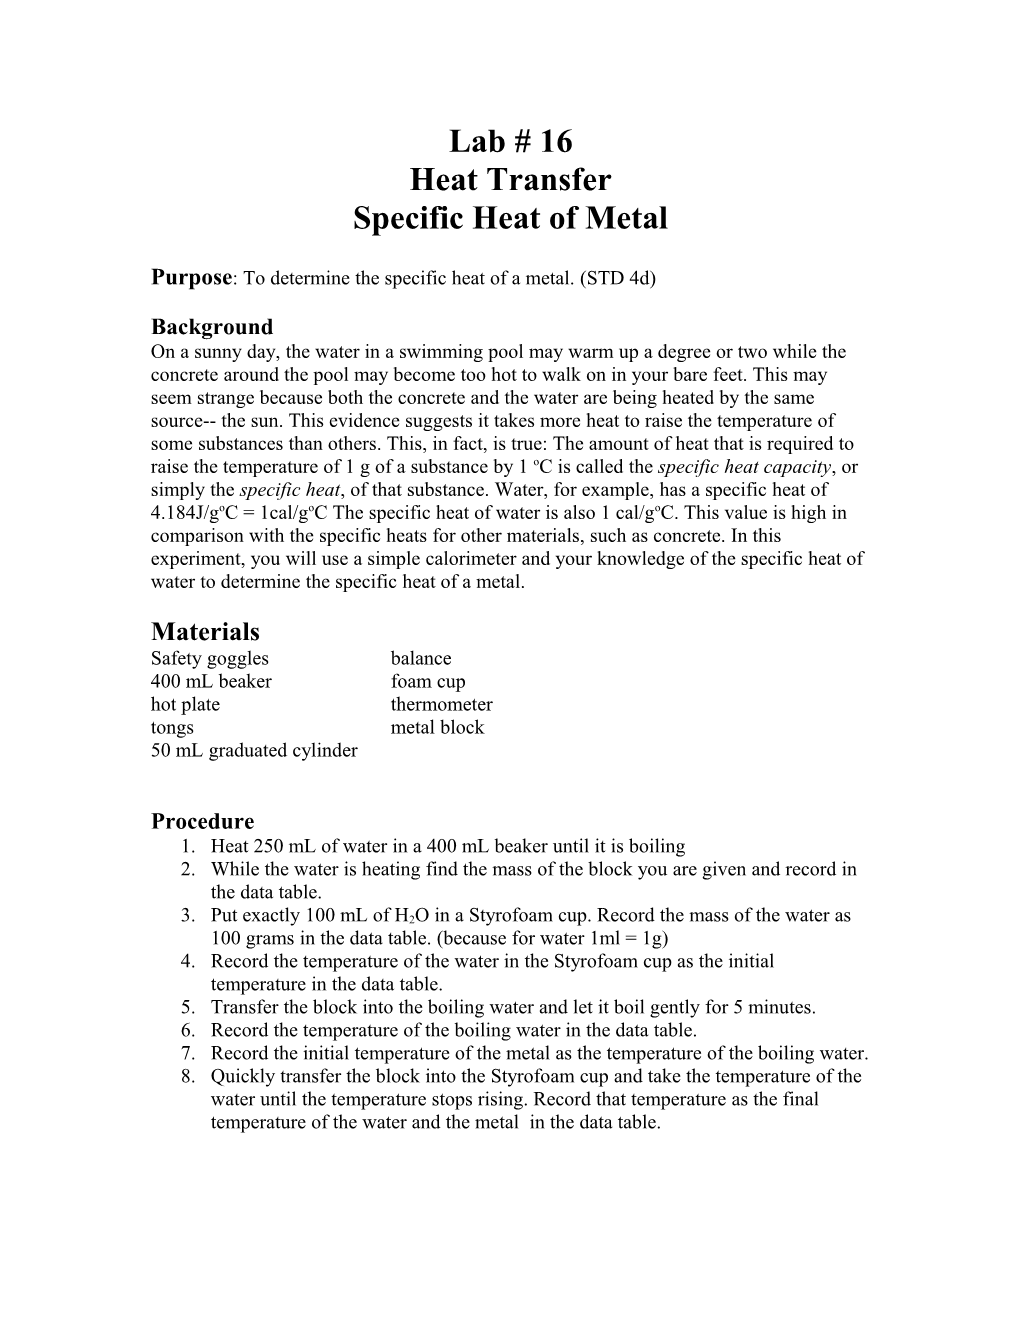 Specific Heat of Metal